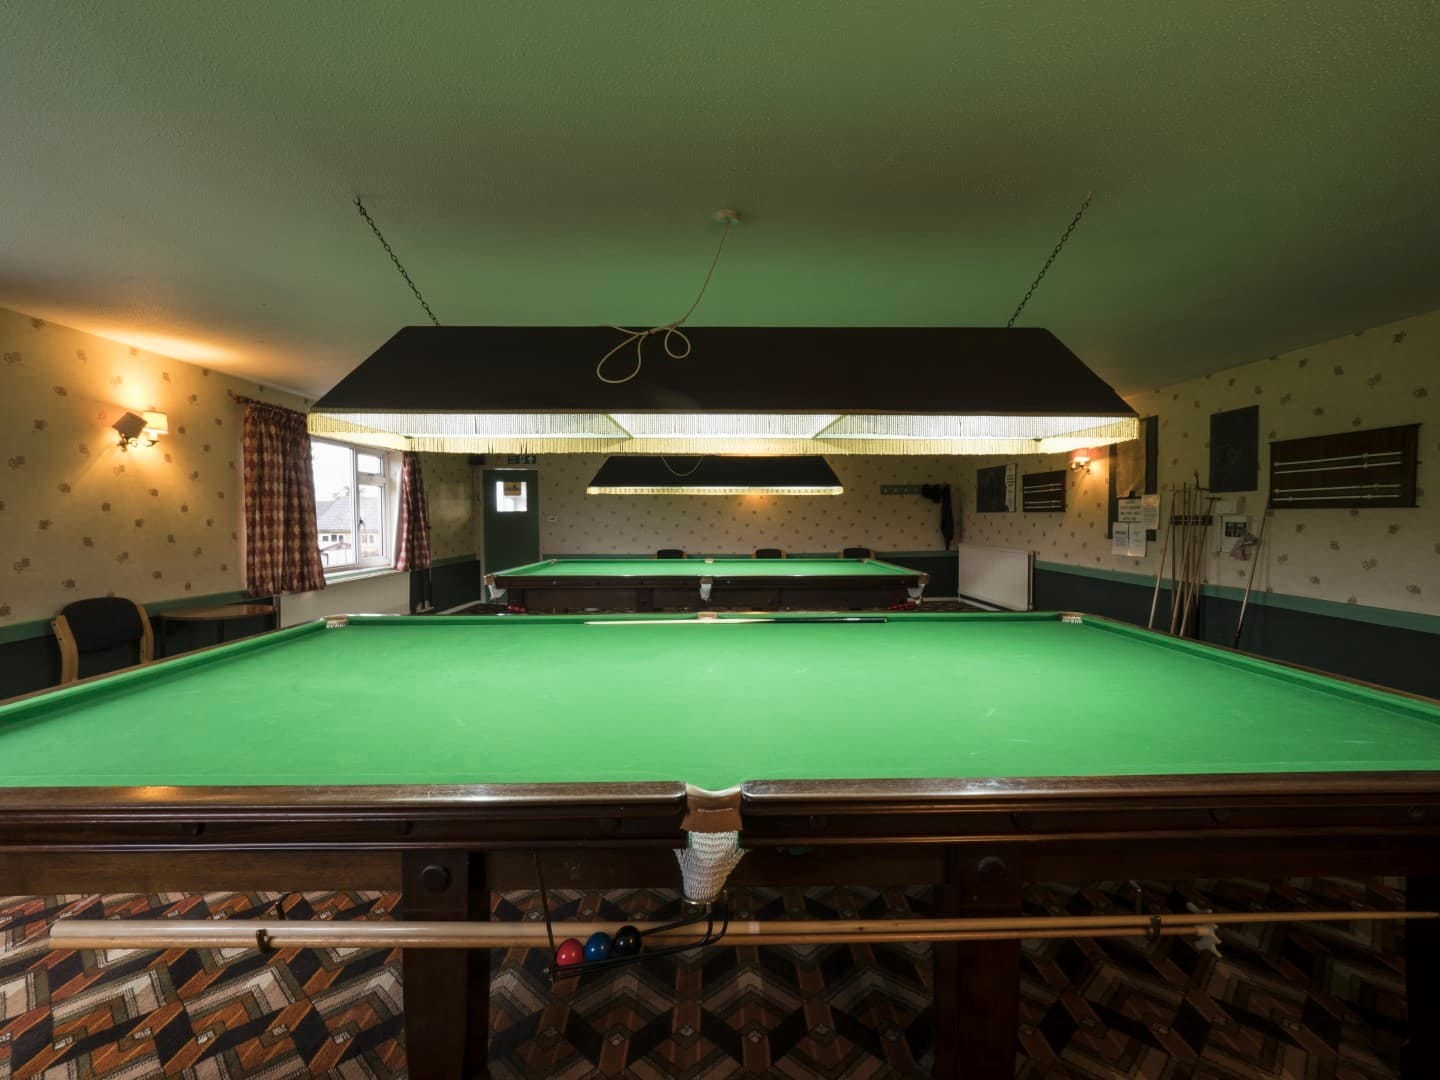 Snooker Room